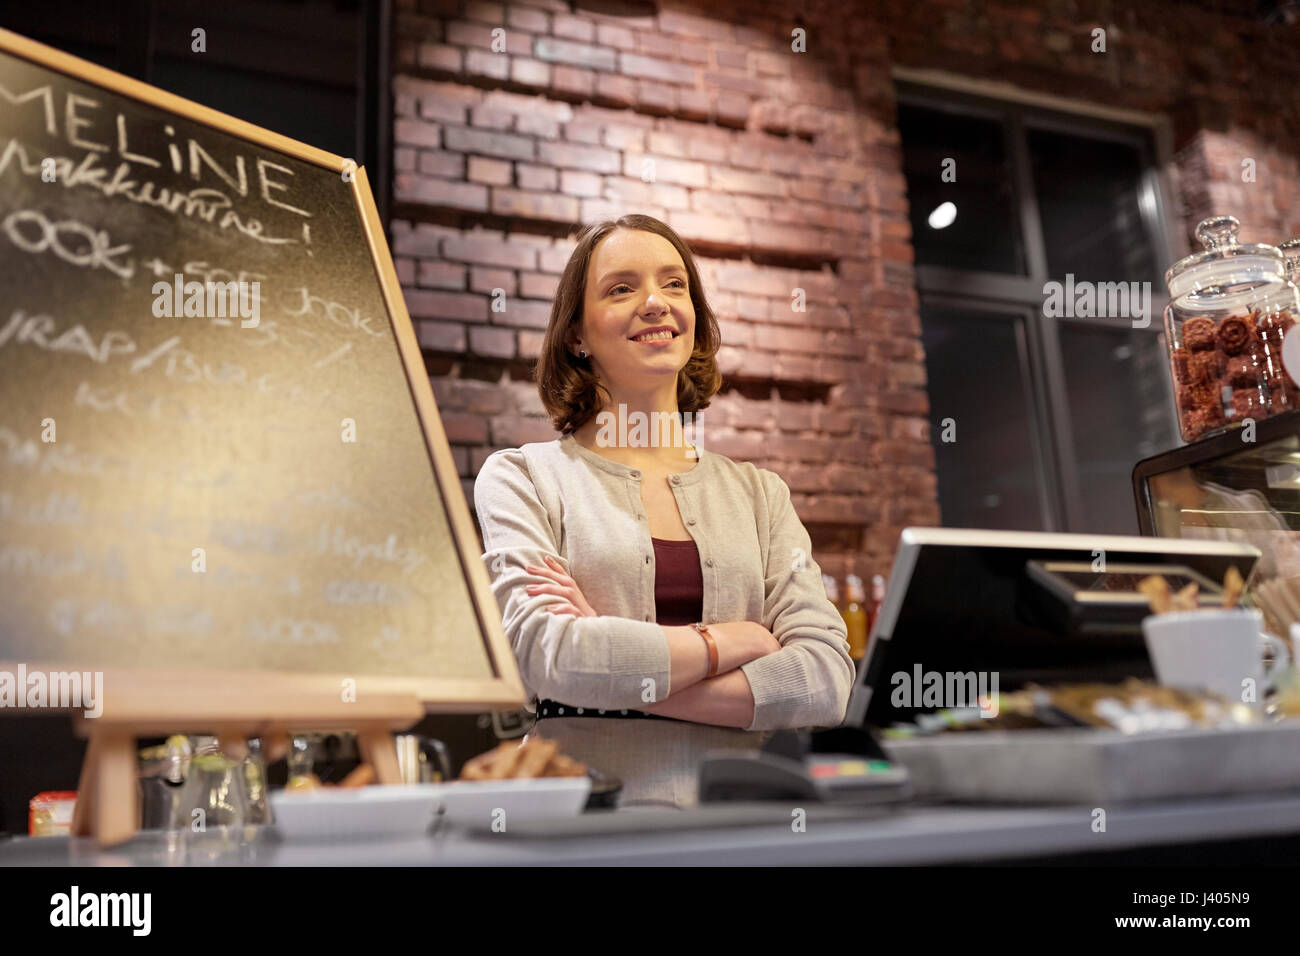 Femme heureuse ou barmaid au comptoir café Banque D'Images